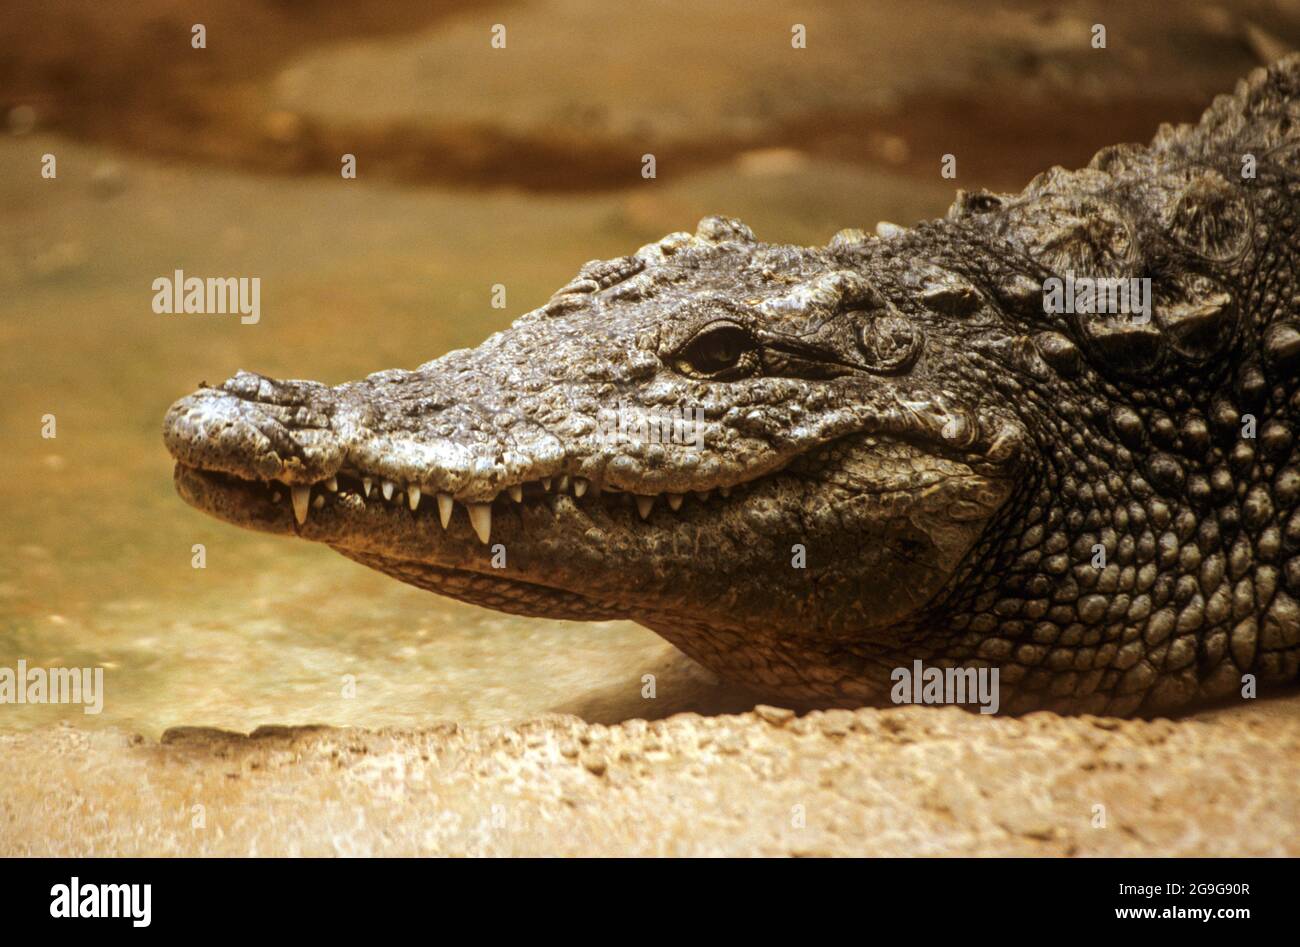 Caimano dagli occhiali (Caiman crocodilus). Immersi in acqua. Questo rettile vive in zone umide in America Centrale e America del Sud. Esso è esclusivamente carnivori, Foto Stock